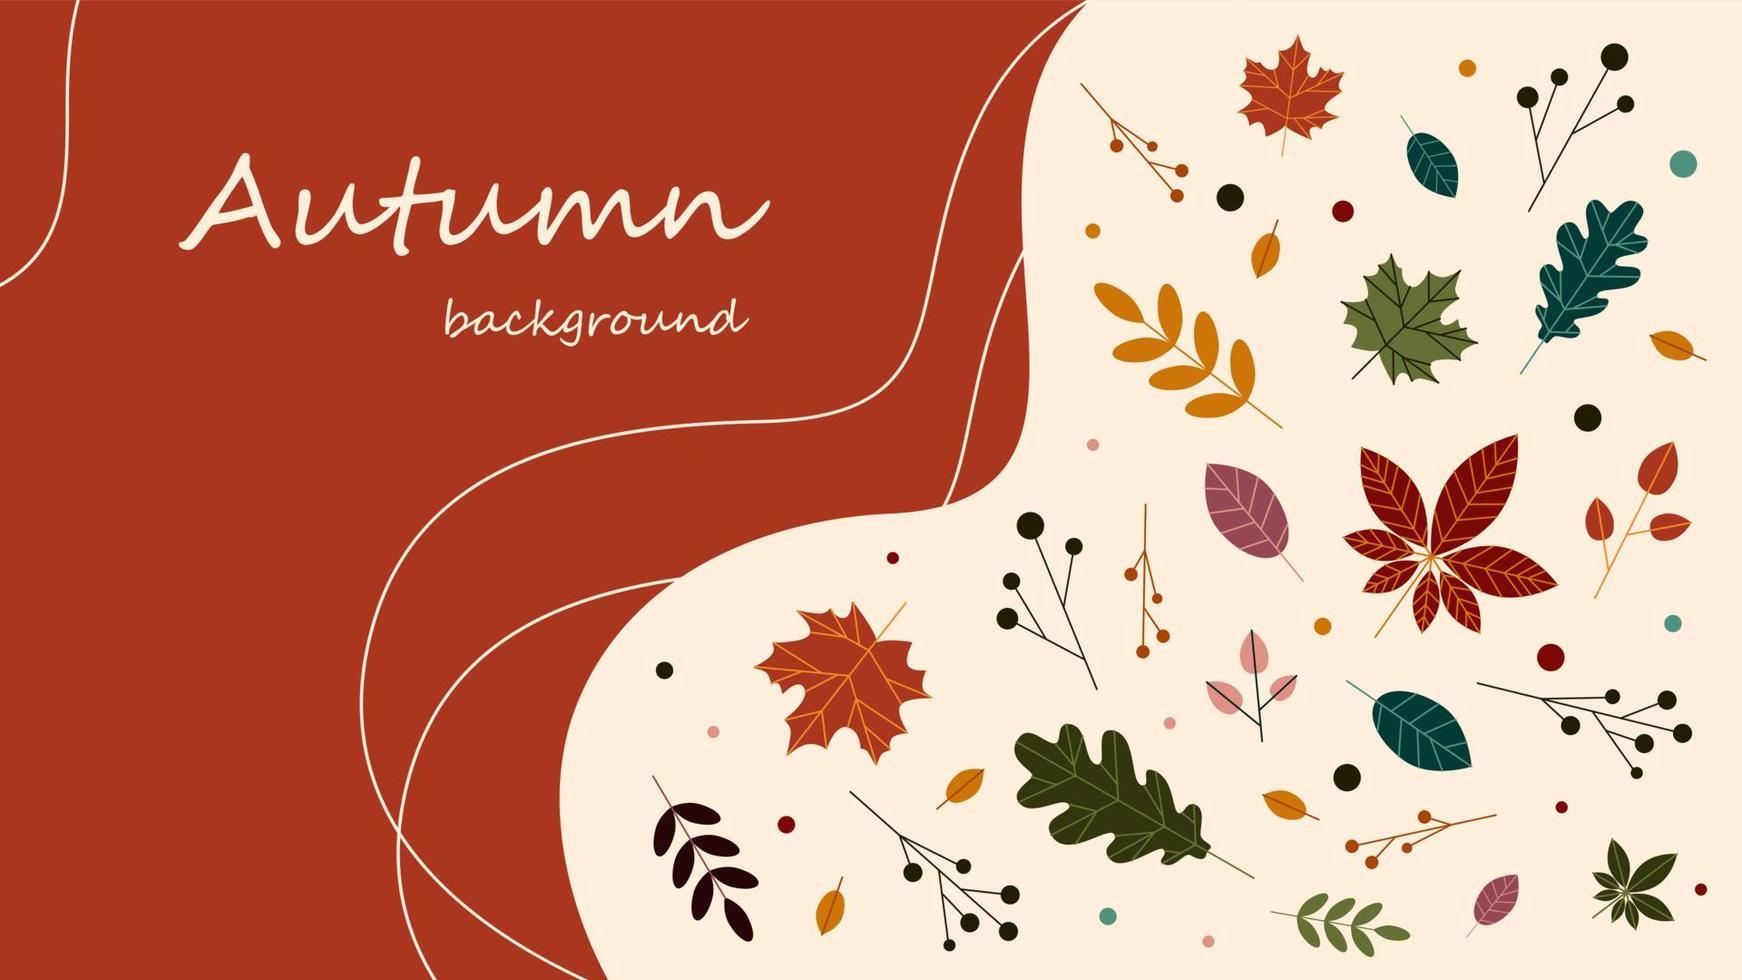 herfst, herfstbanner, abstracte achtergrondontwerpen voor verhaal, herfstverkoop, promotionele inhoud op sociale media. vectorillustratie. vector